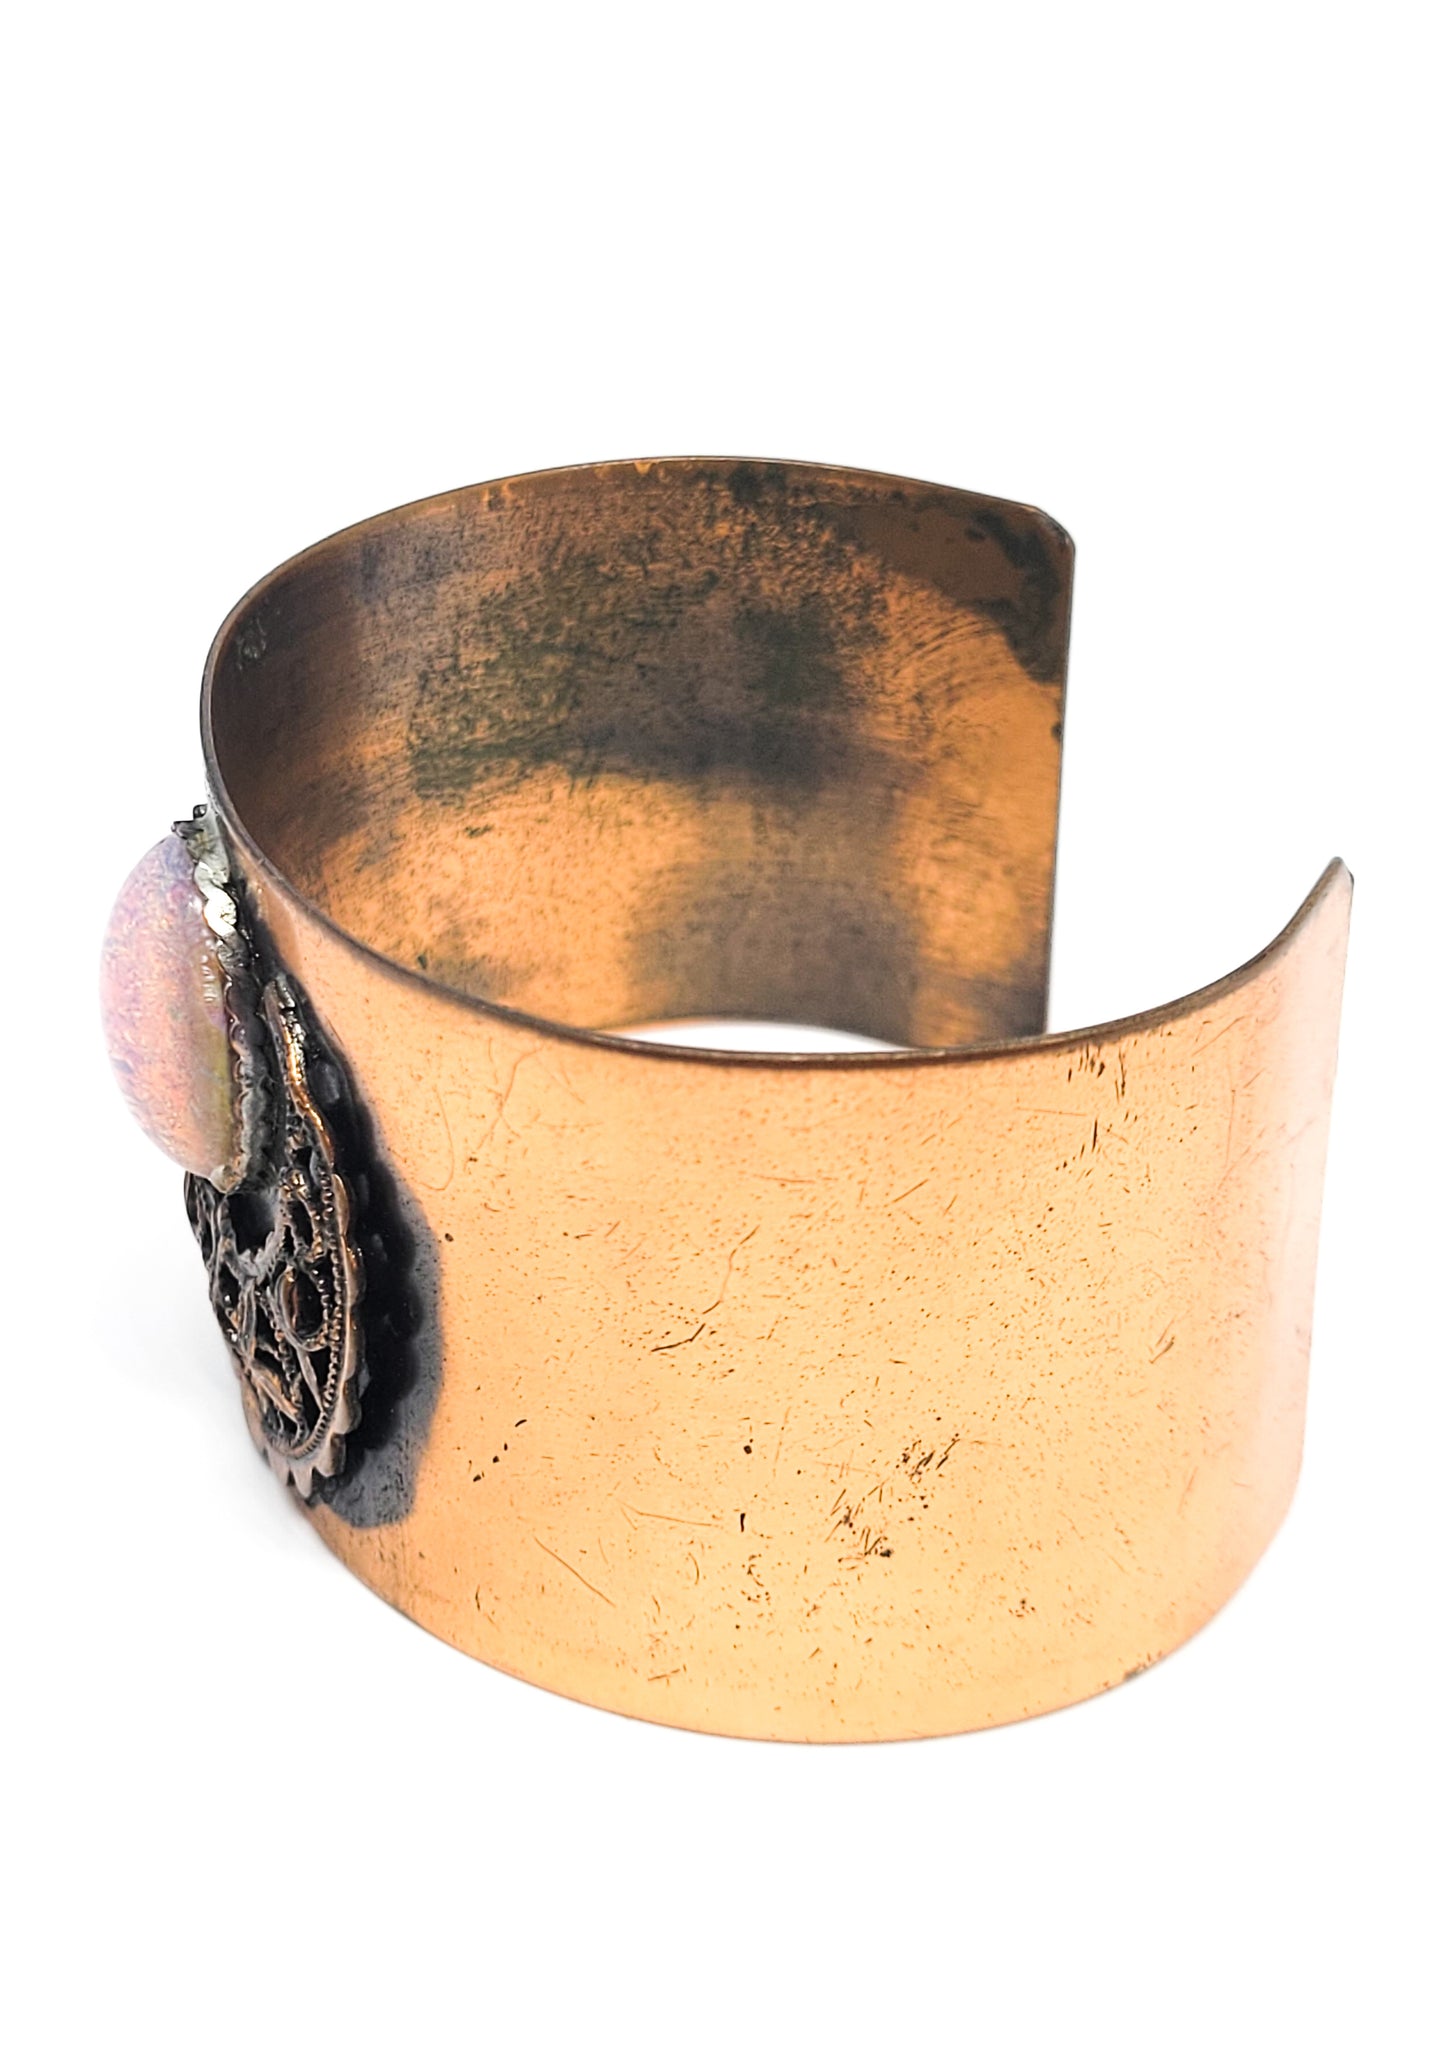 Copper Goddess crescent moon diachronic pink opal art class vintage cuff bracelet